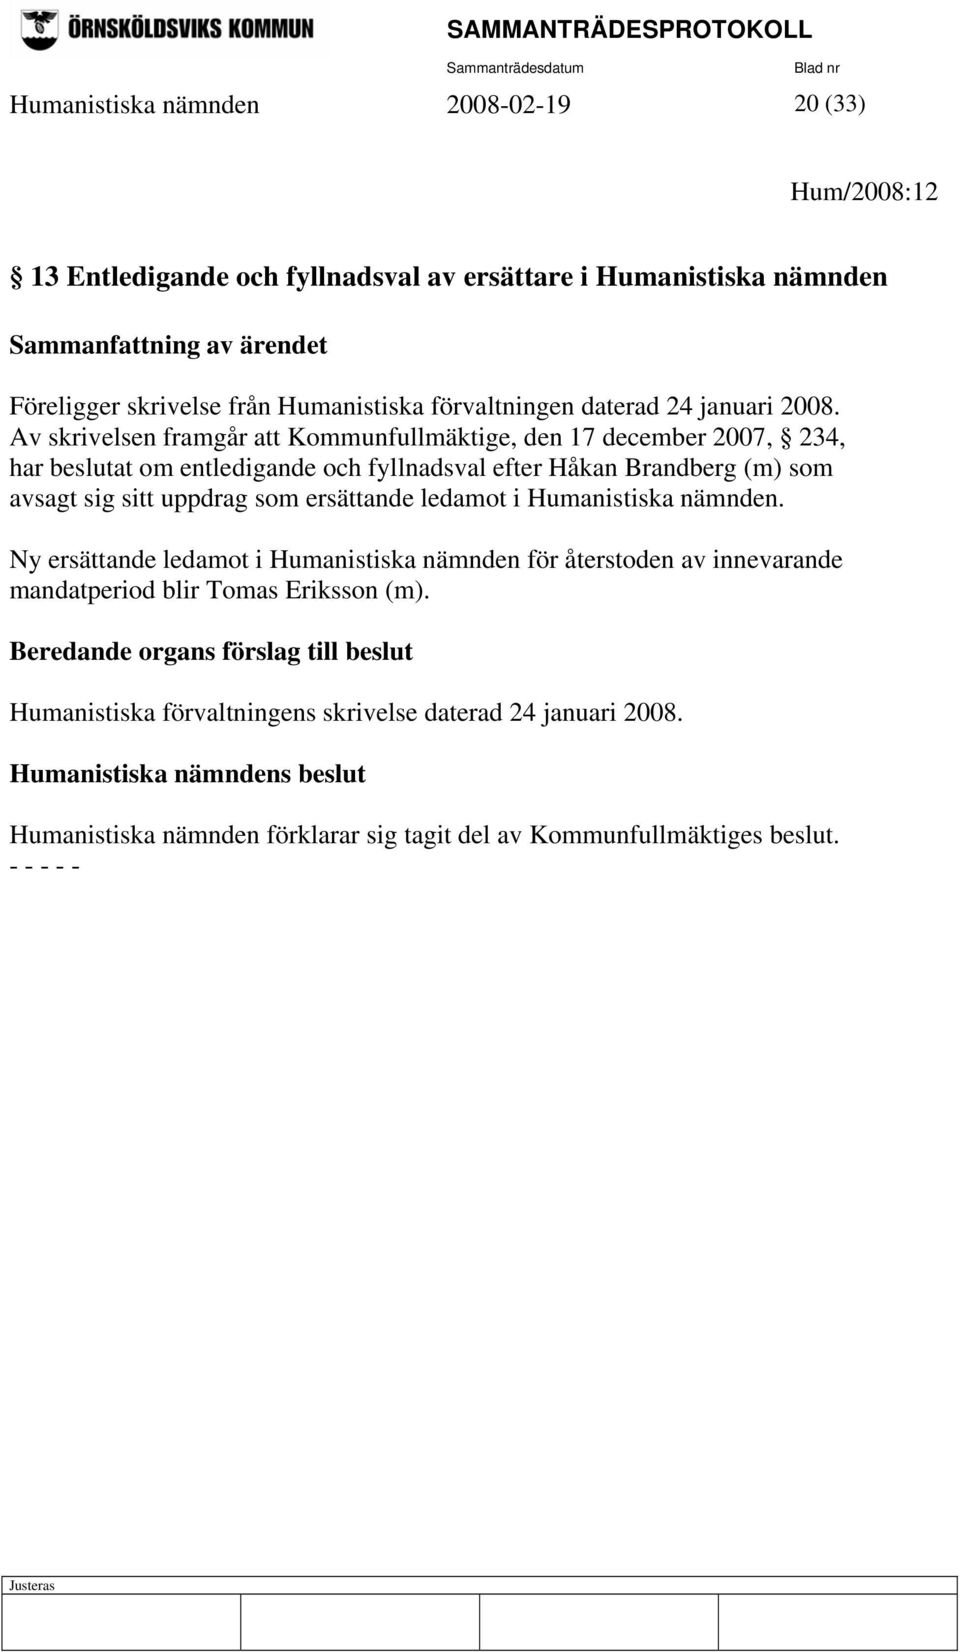 Av skrivelsen framgår att Kommunfullmäktige, den 17 december 2007, 234, har beslutat om entledigande och fyllnadsval efter Håkan Brandberg (m) som avsagt sig sitt